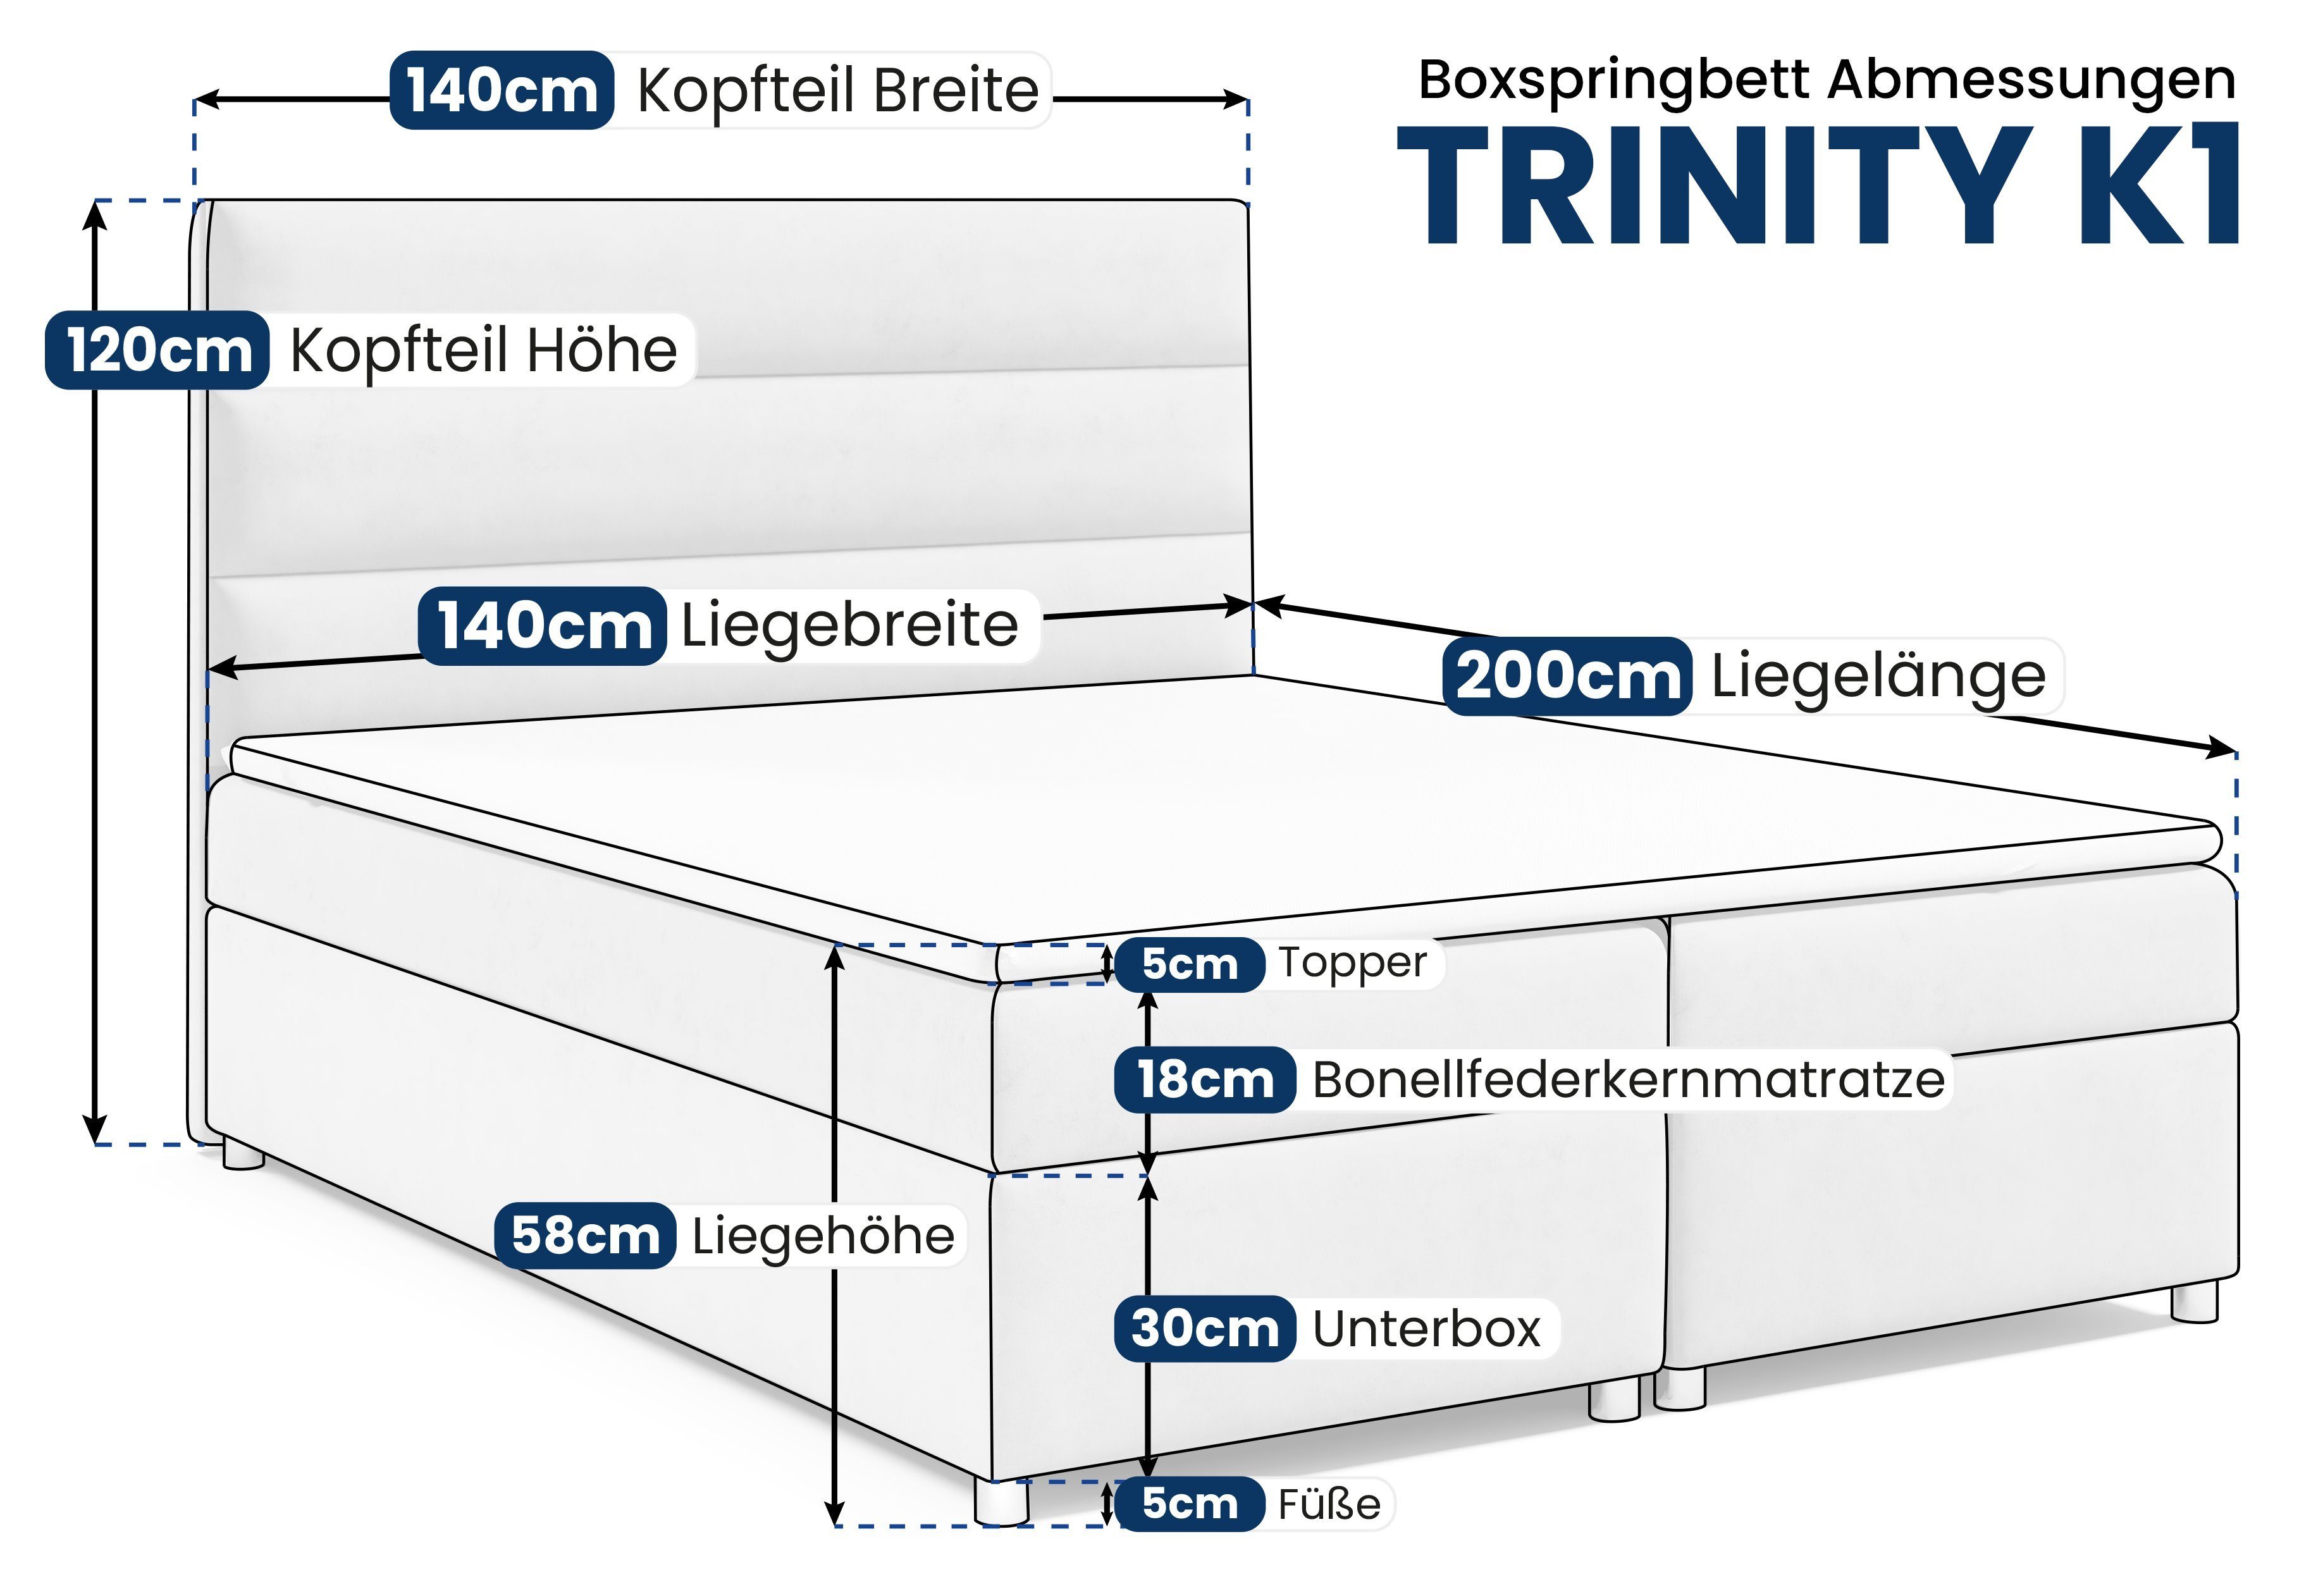 Home Best Türkis Trinity for Boxspringbett Topper mit K1, Bettkasten und